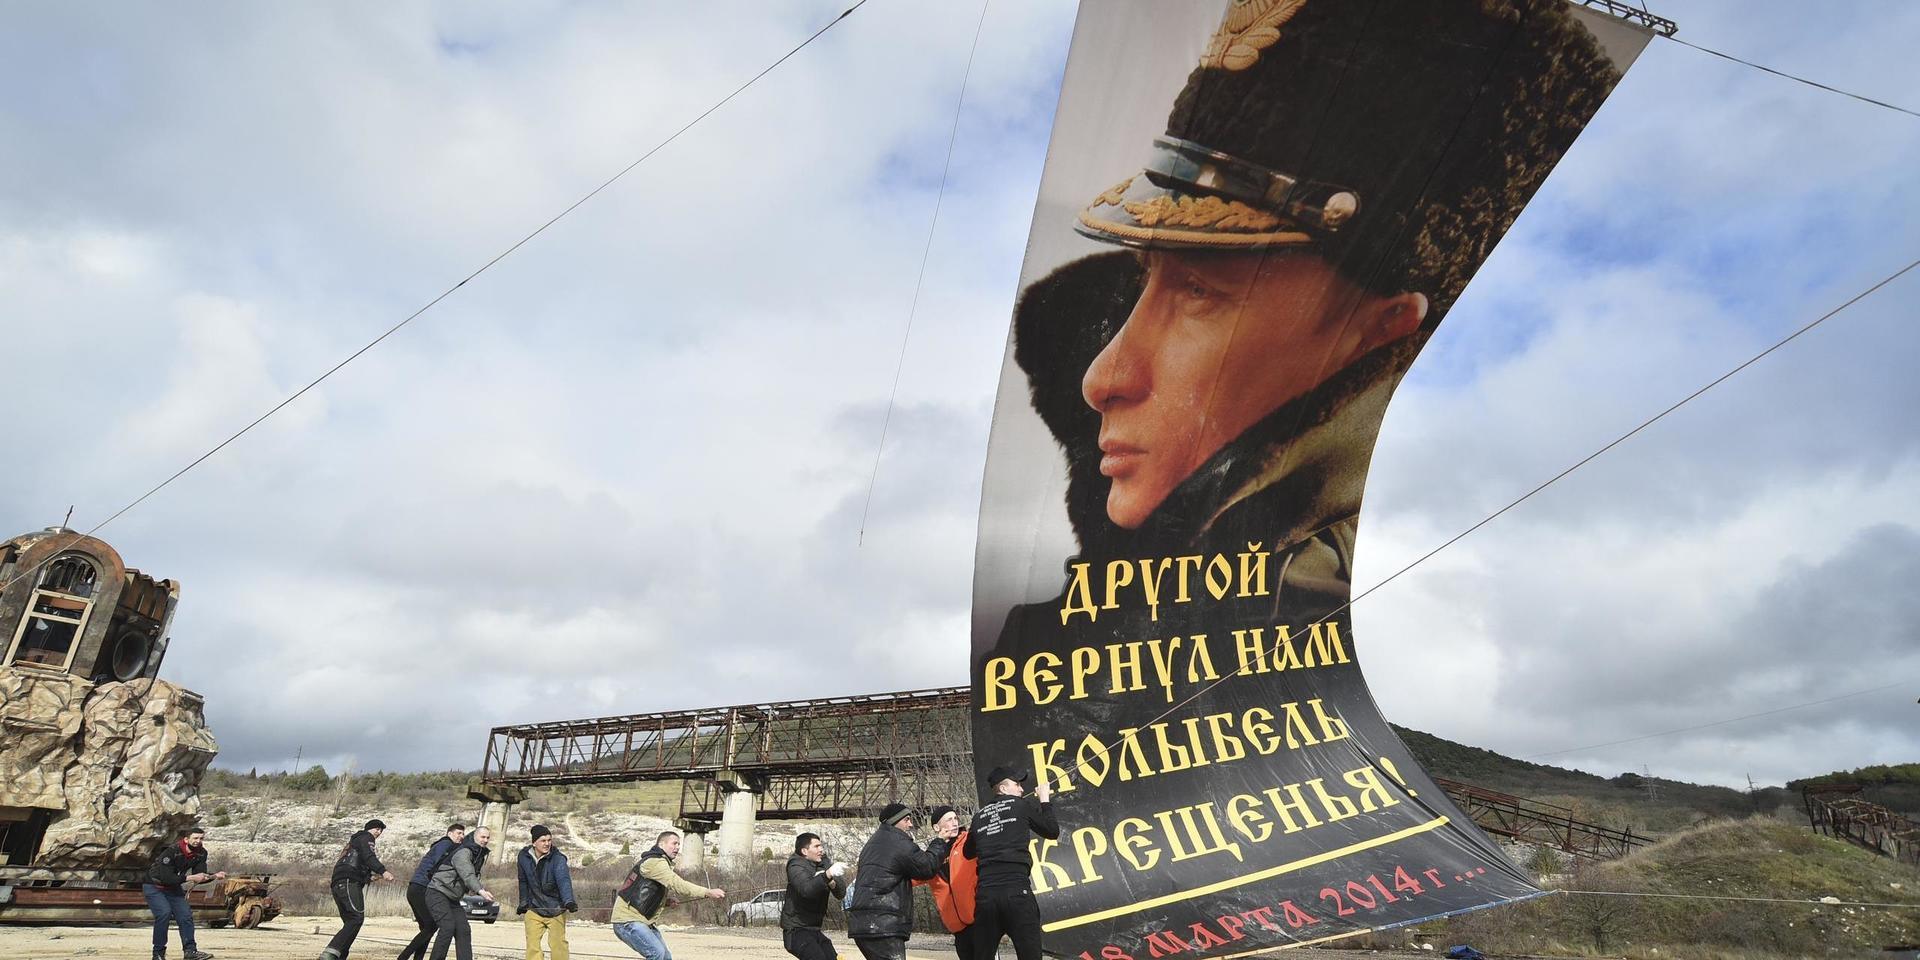 I staden Sevastopol på ukrainska Krimhalvön monteras en flagga med Rysslands president Vladimir Putin, med texten 'En annan gav oss åter dopets vagga', på sjuårsdagen av den ryska annekteringen av Krim i mars i år.